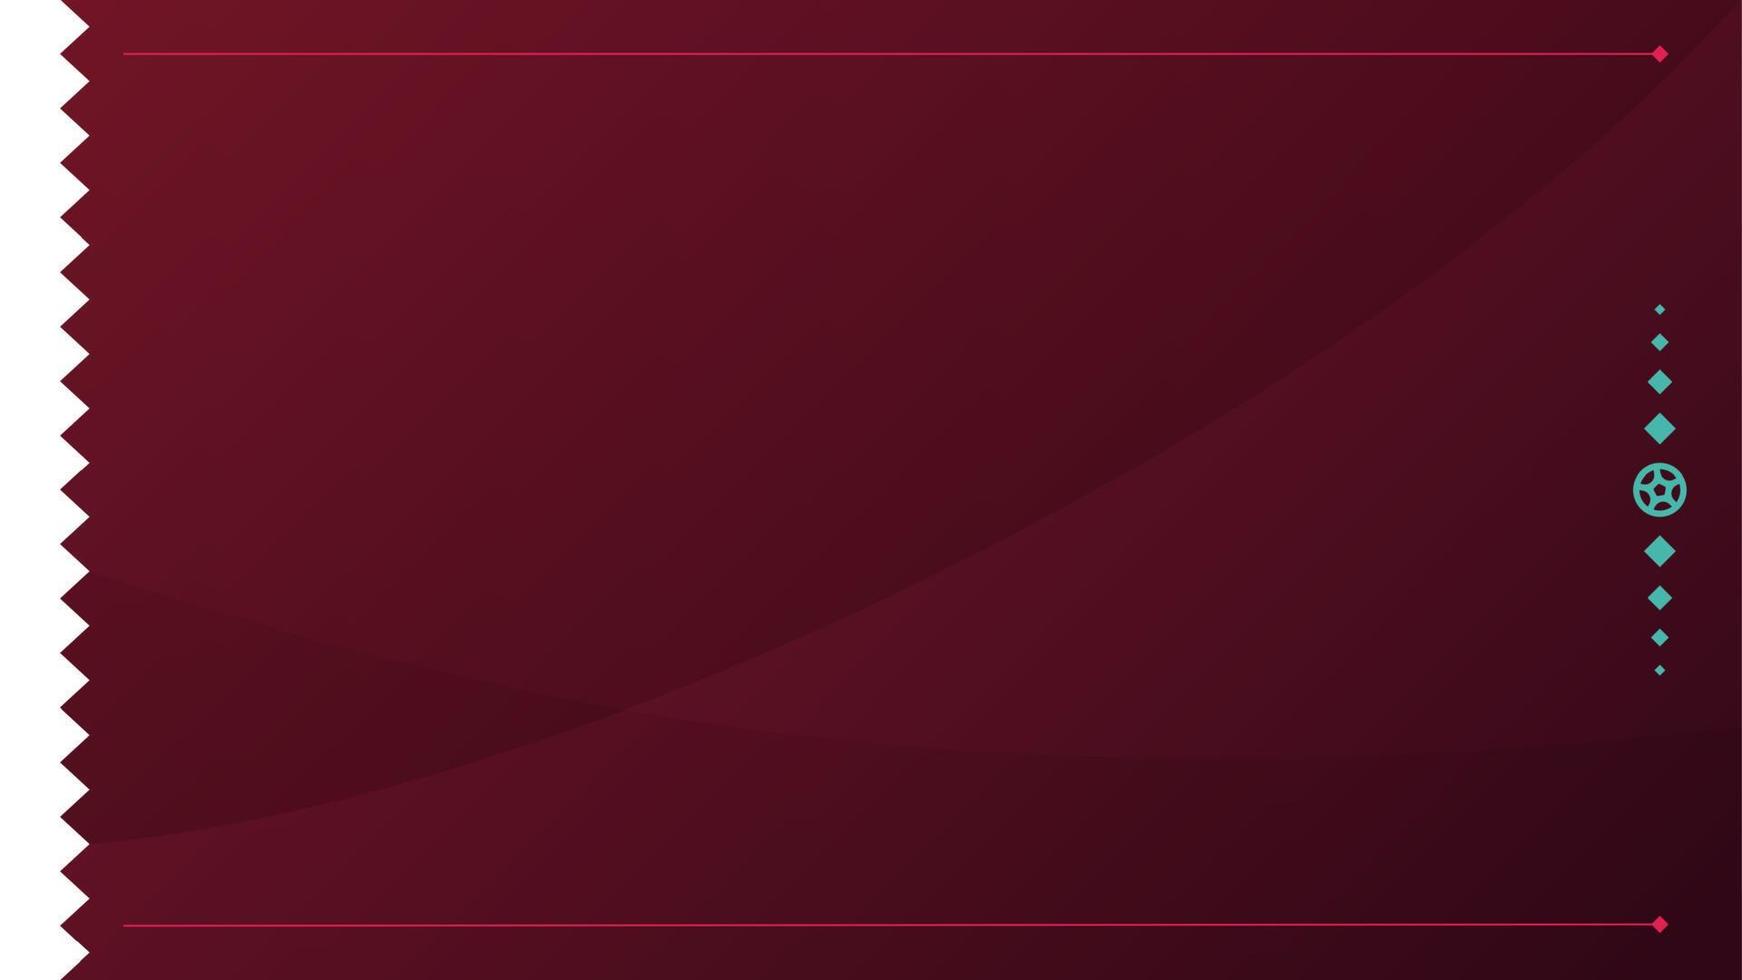 Fondo del torneo de fútbol 2022. patrón de fútbol de ilustración vectorial para banner, tarjeta, sitio web. bandera nacional de color burdeos qatar vector